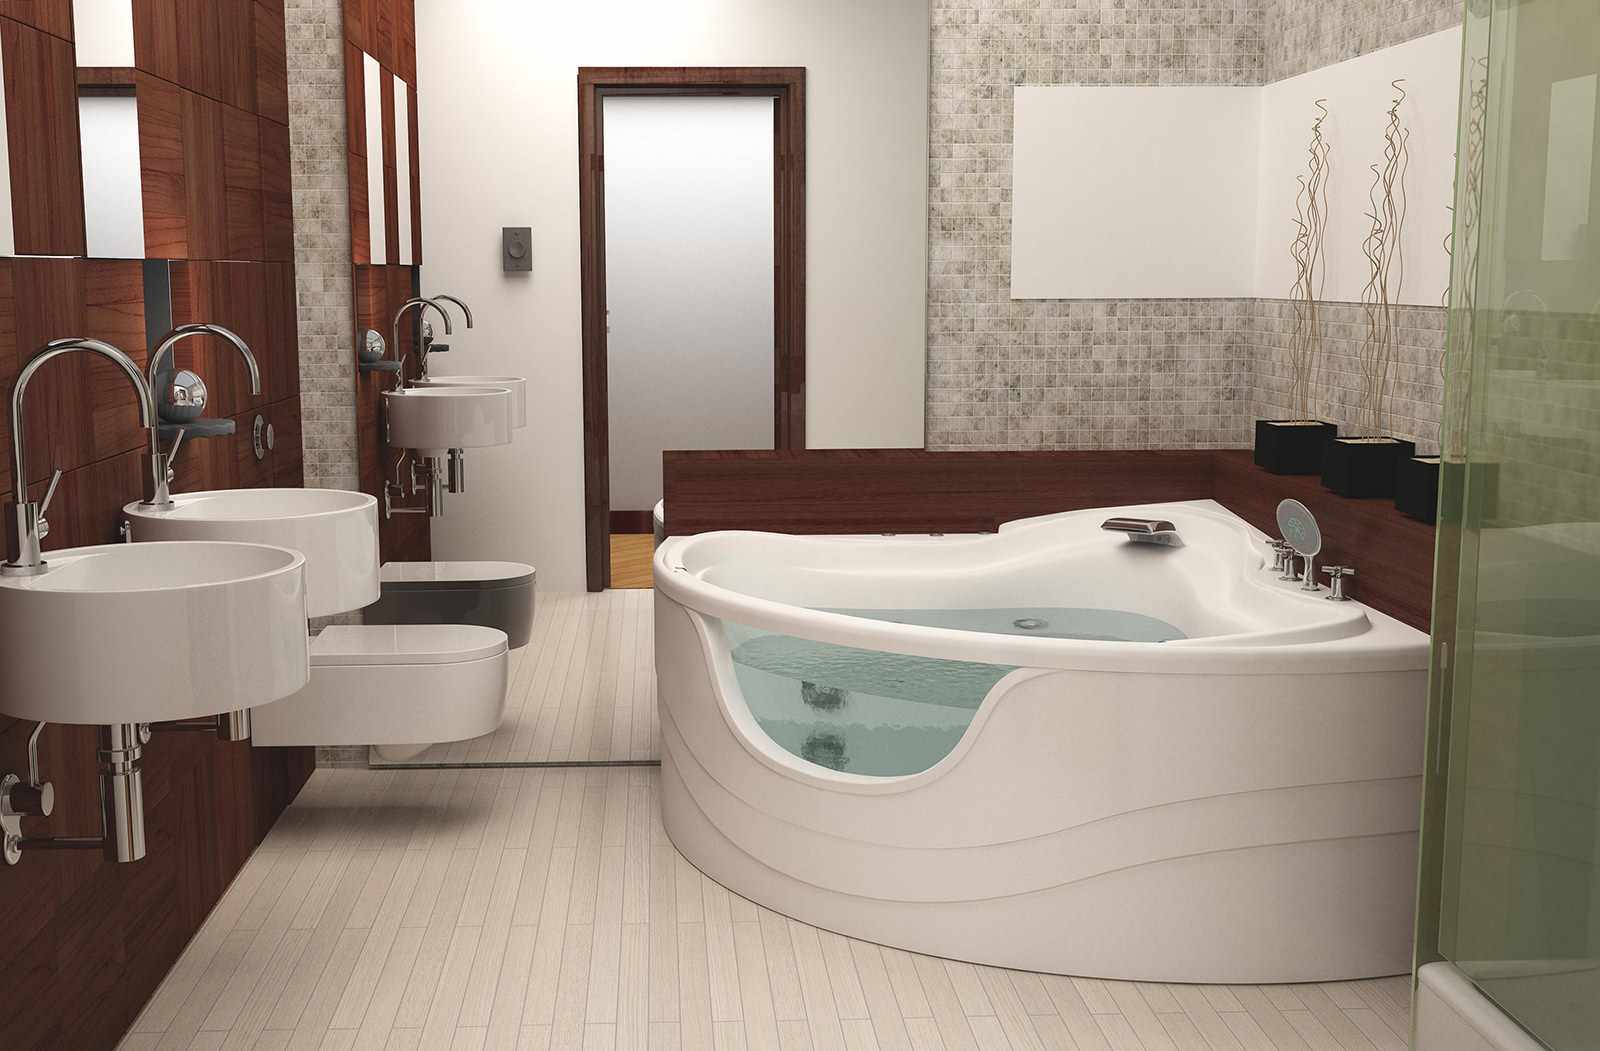 version du design insolite de la salle de bain avec baignoire d'angle